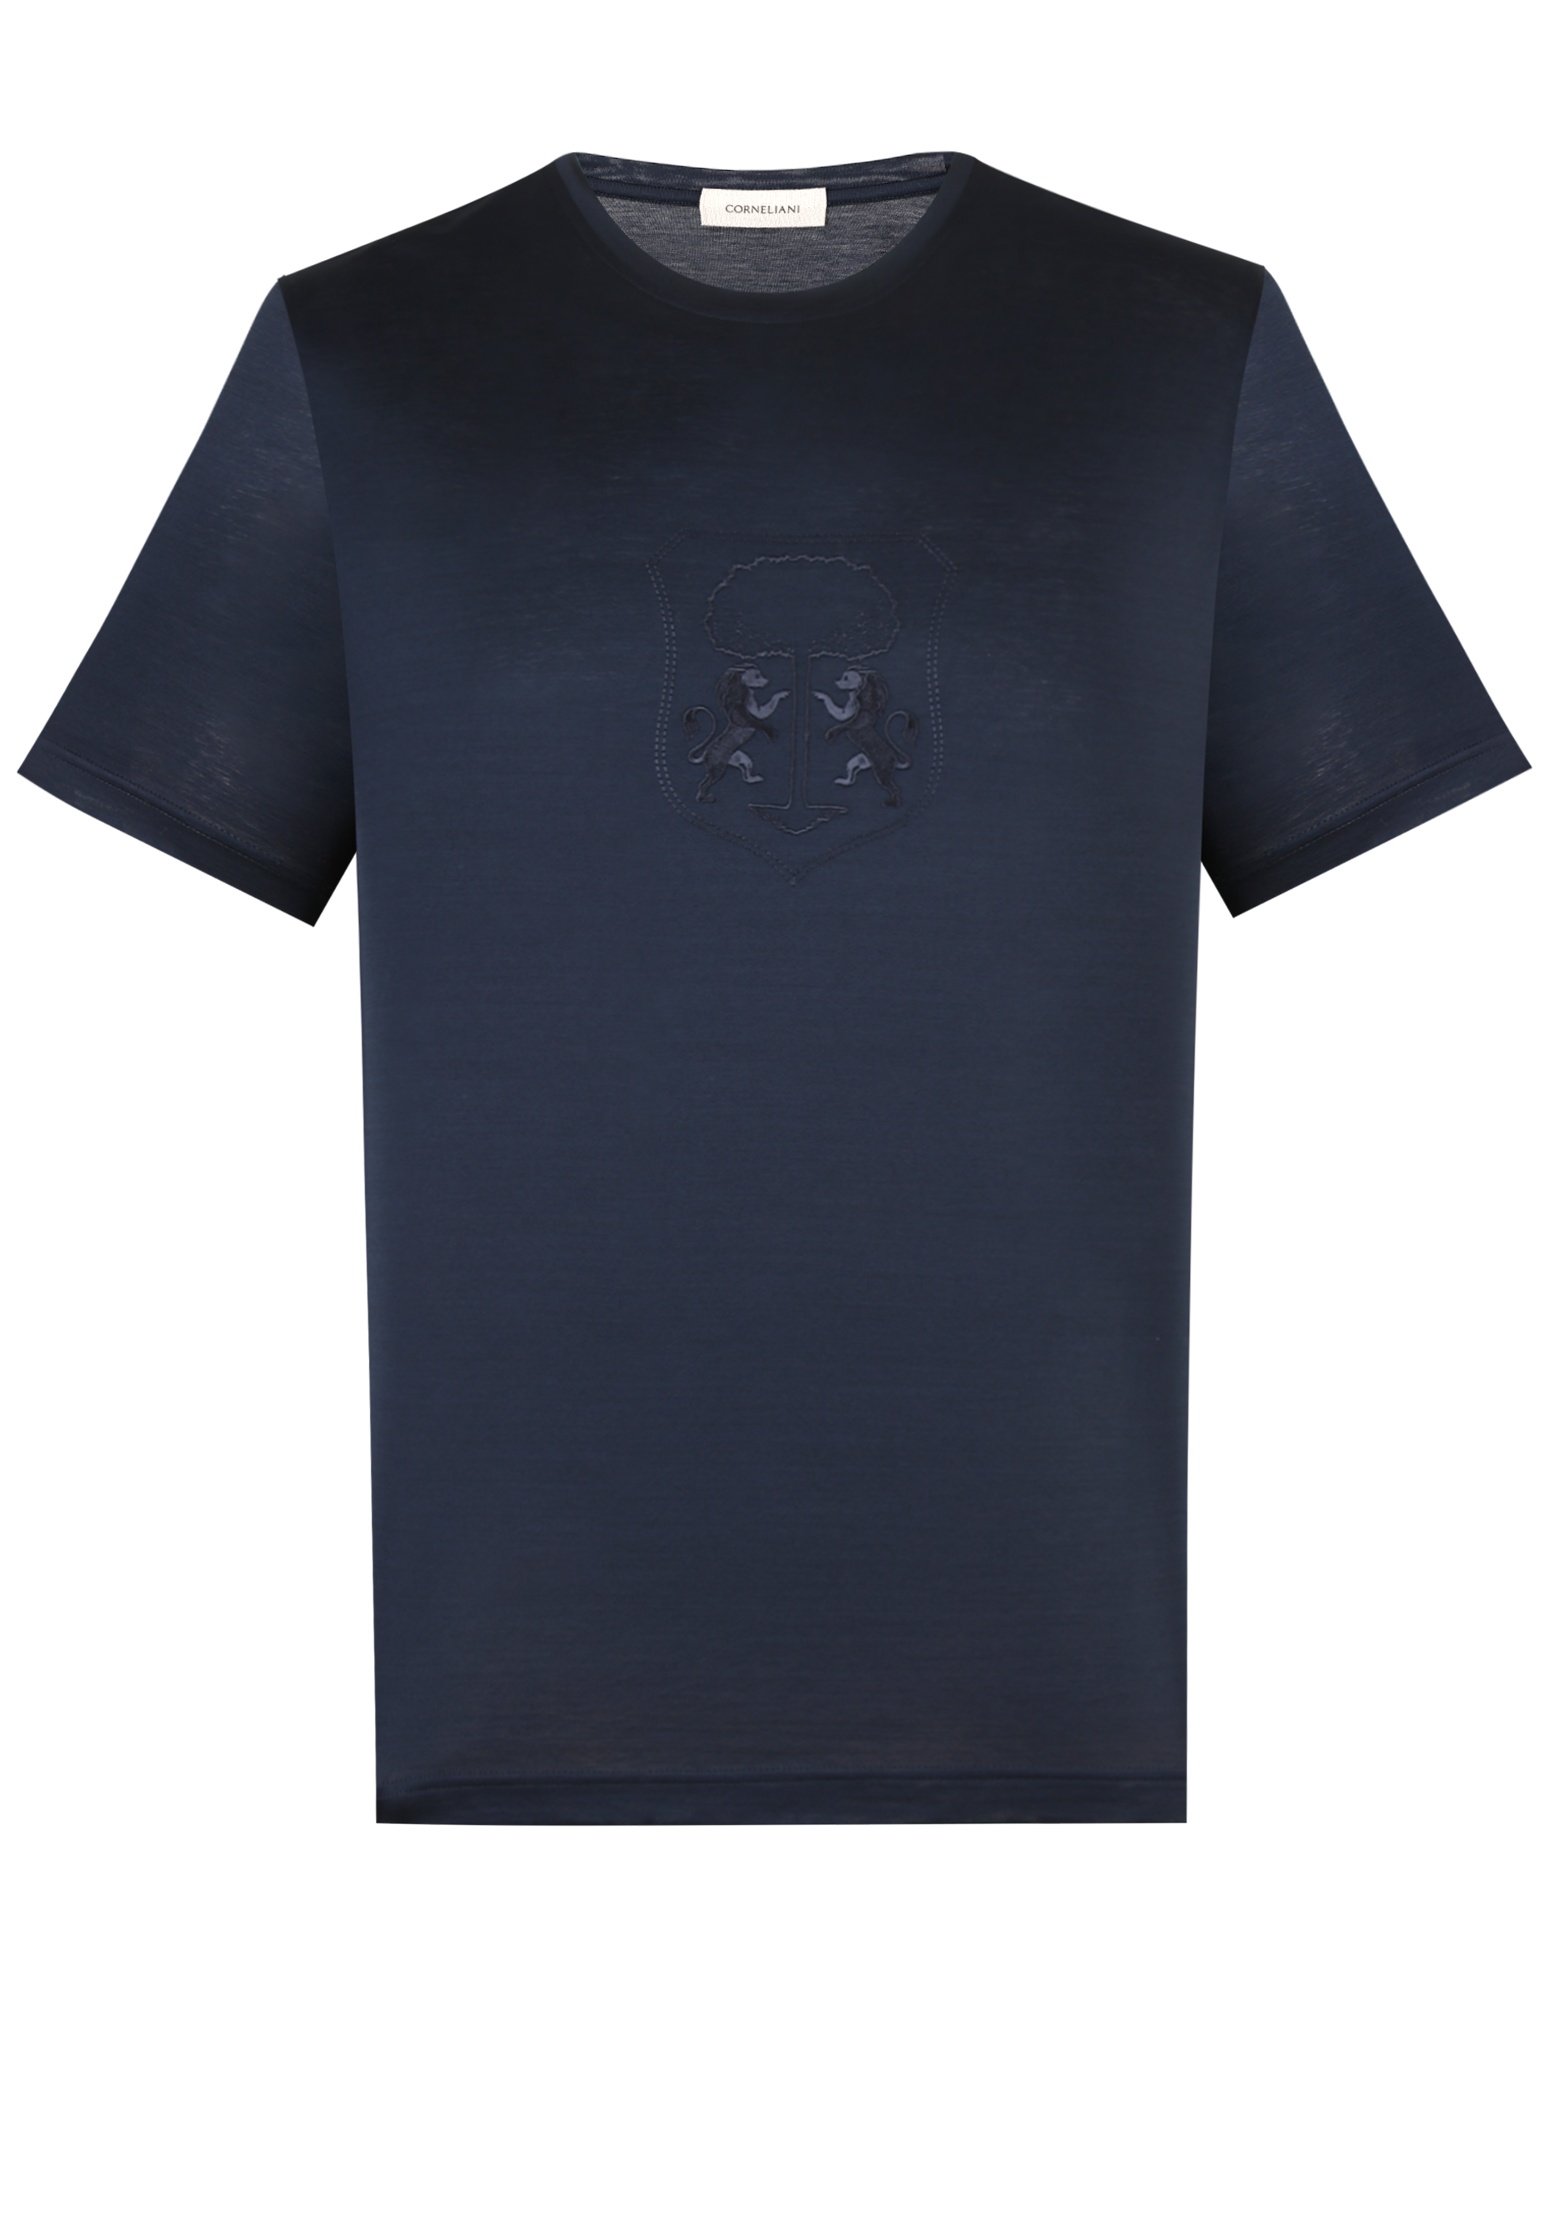 мужская футболка corneliani, синяя